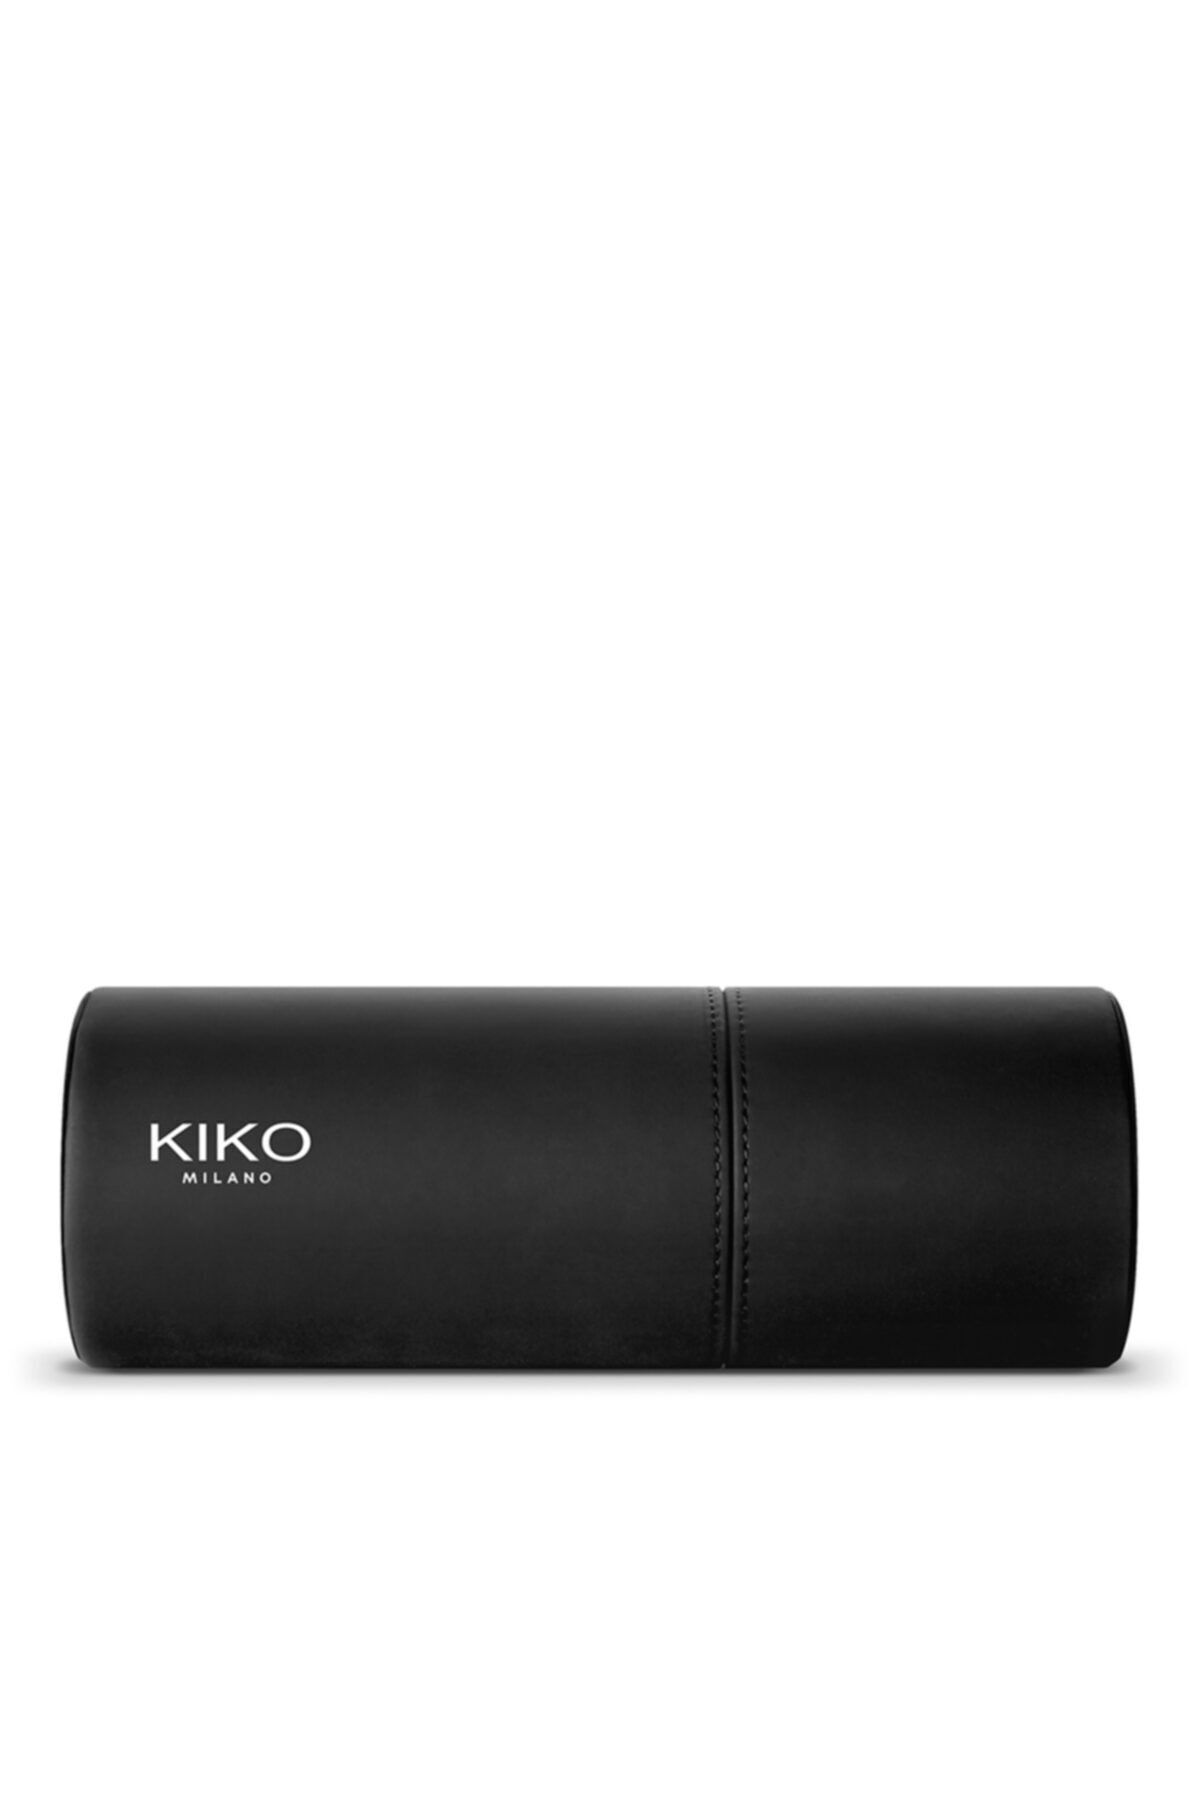 KIKO Makyaj Aplikatörleri - Brush Experts Holder 8025272639279 KM0050205100044